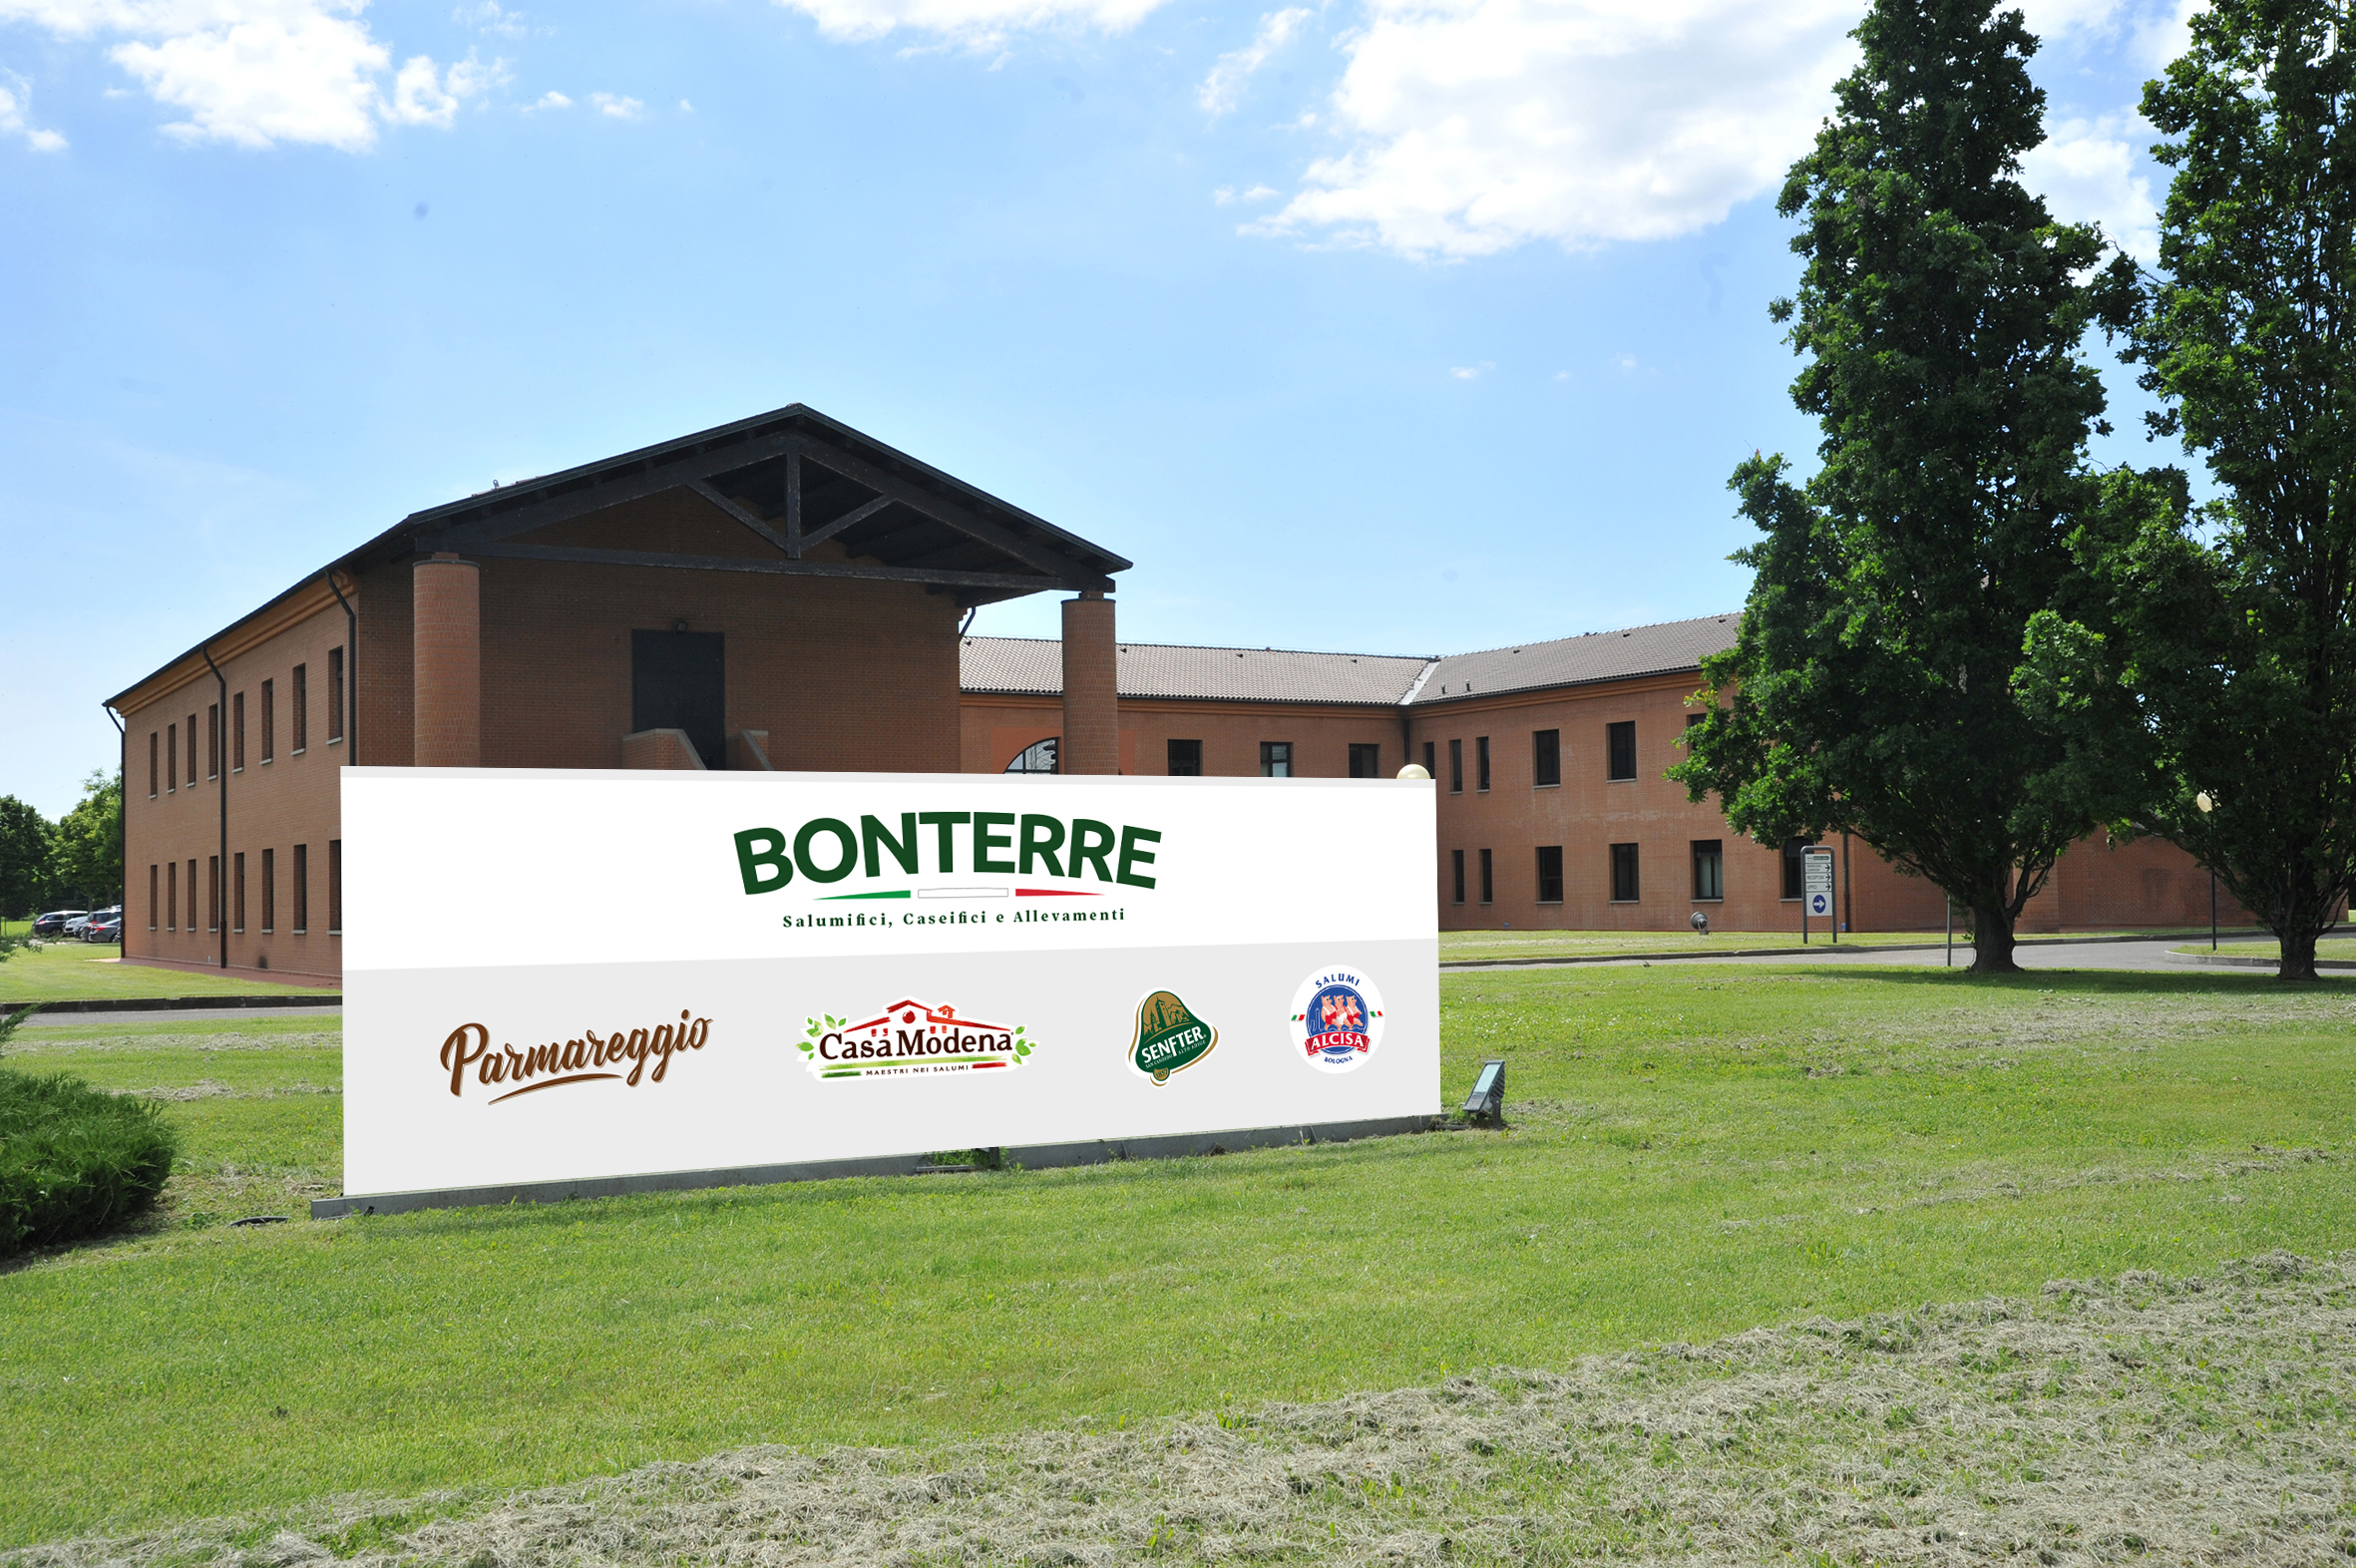 Alimentare: da Intesa Sanpaolo 37 milioni di euro a Parmareggio (Gruppo Bonterre) per progetti di crescita sostenibile